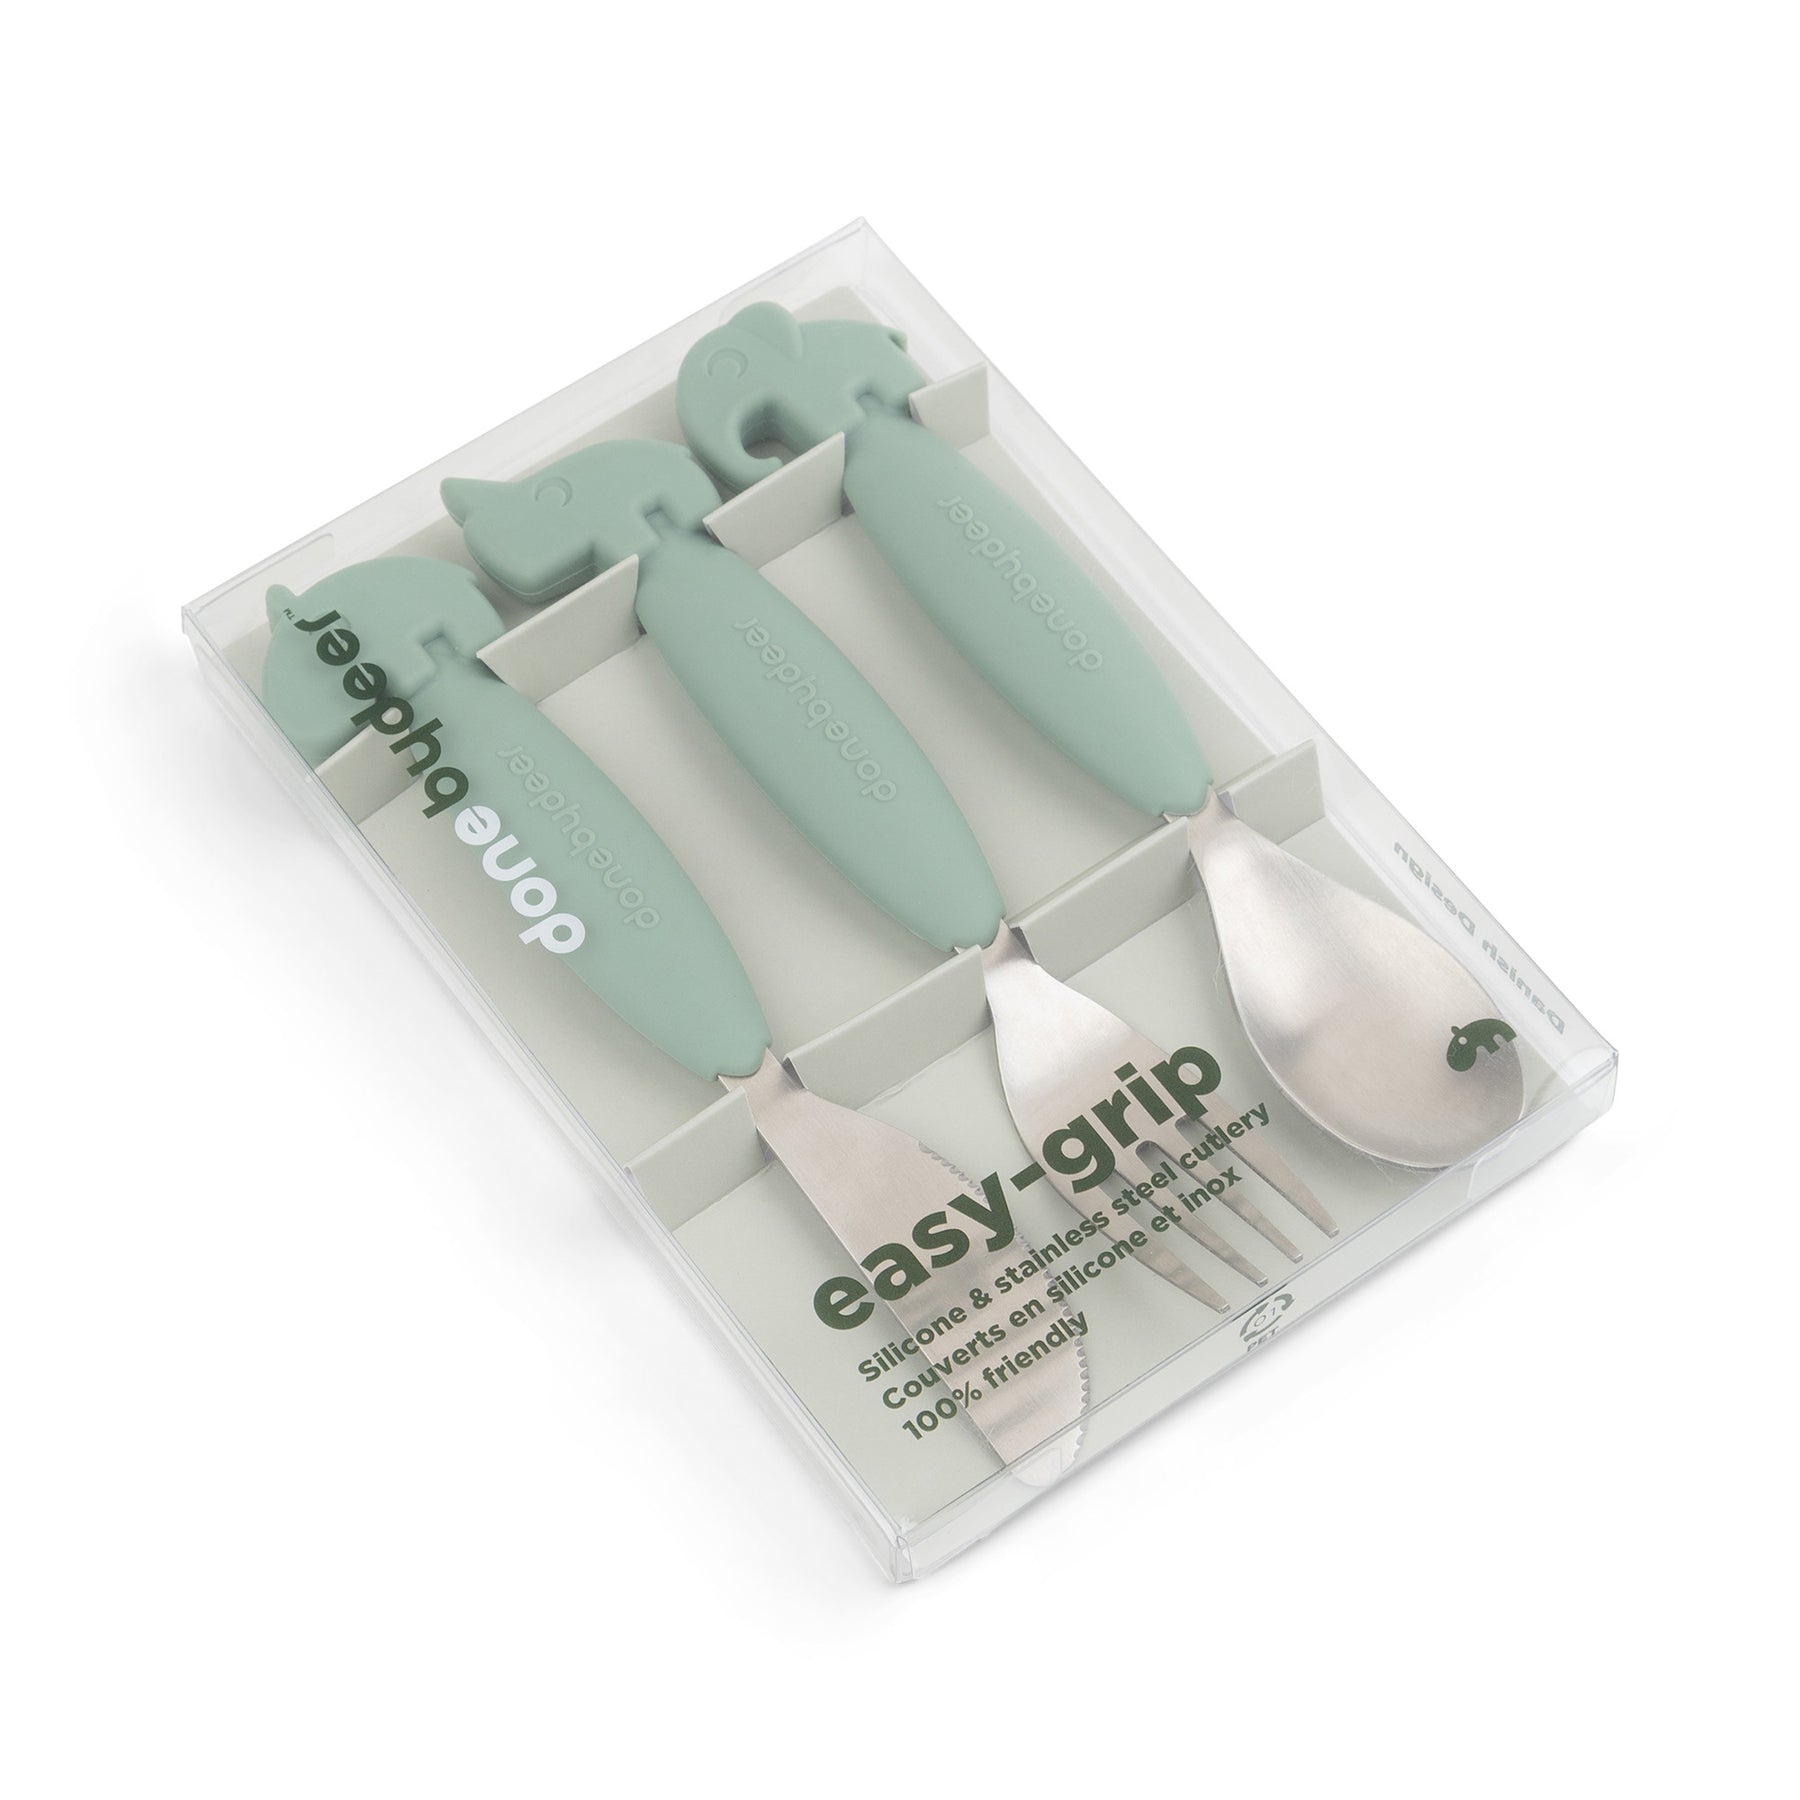 Easy-grip cutlery set - Deer friends - Green - Packaging